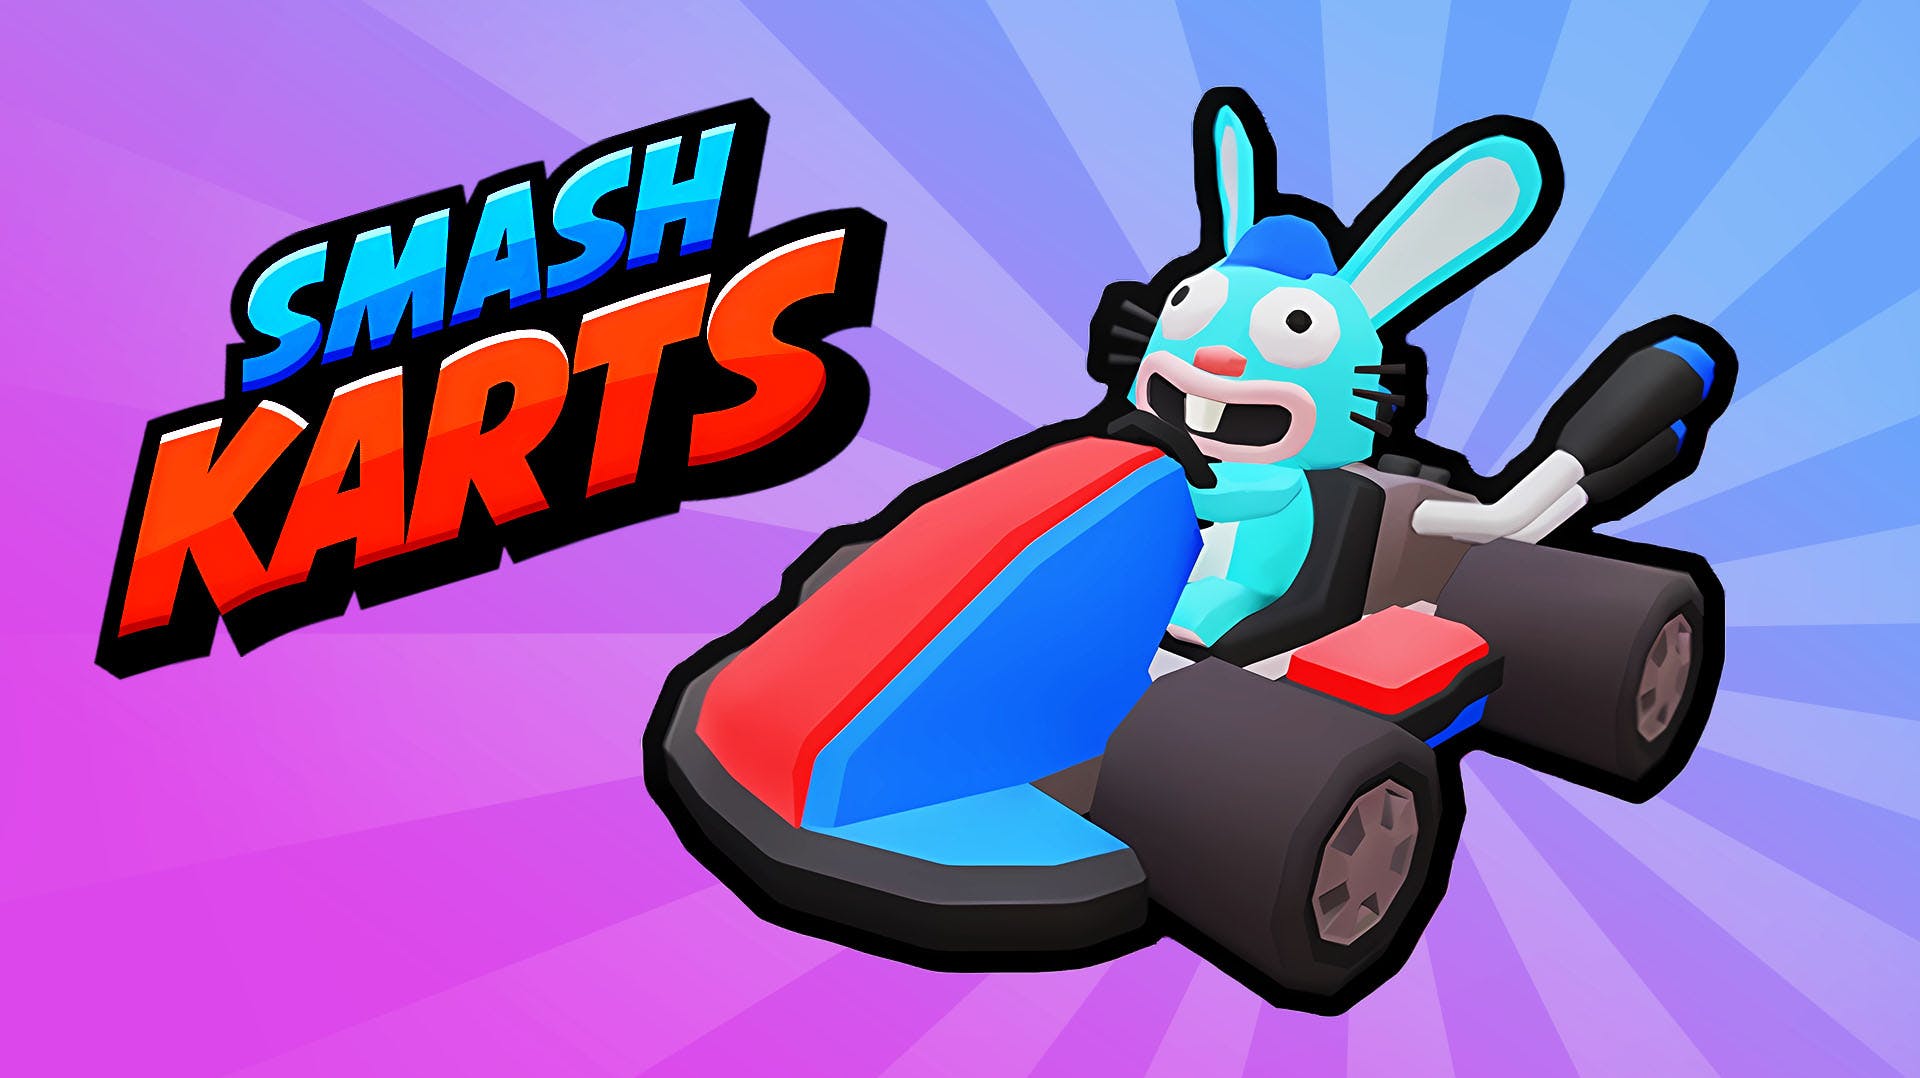 Smash Karts Gameplay